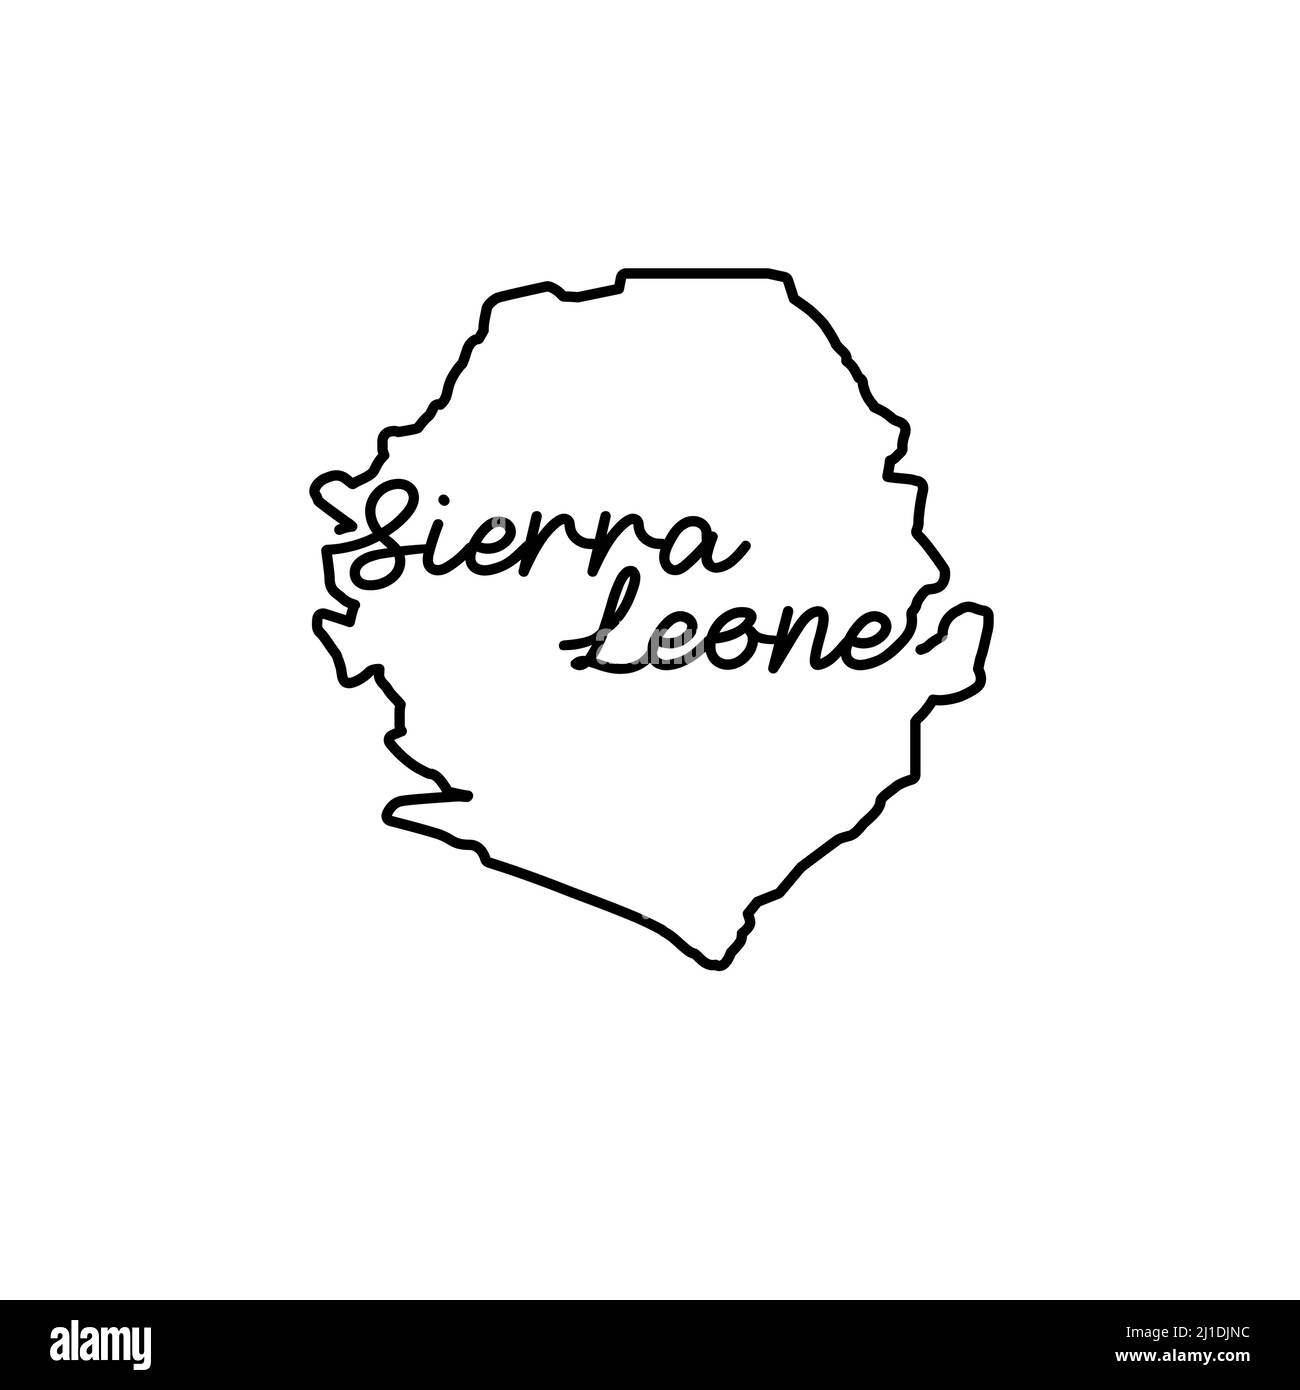 Sierra Leone skizzieren Karte mit dem handschriftlichen Namen des Landes. Kontinuierliche Linienzeichnung des patriotischen Heimatzeichens. Eine Liebe für eine kleine Heimat. T-Shirt-Druck Stock Vektor